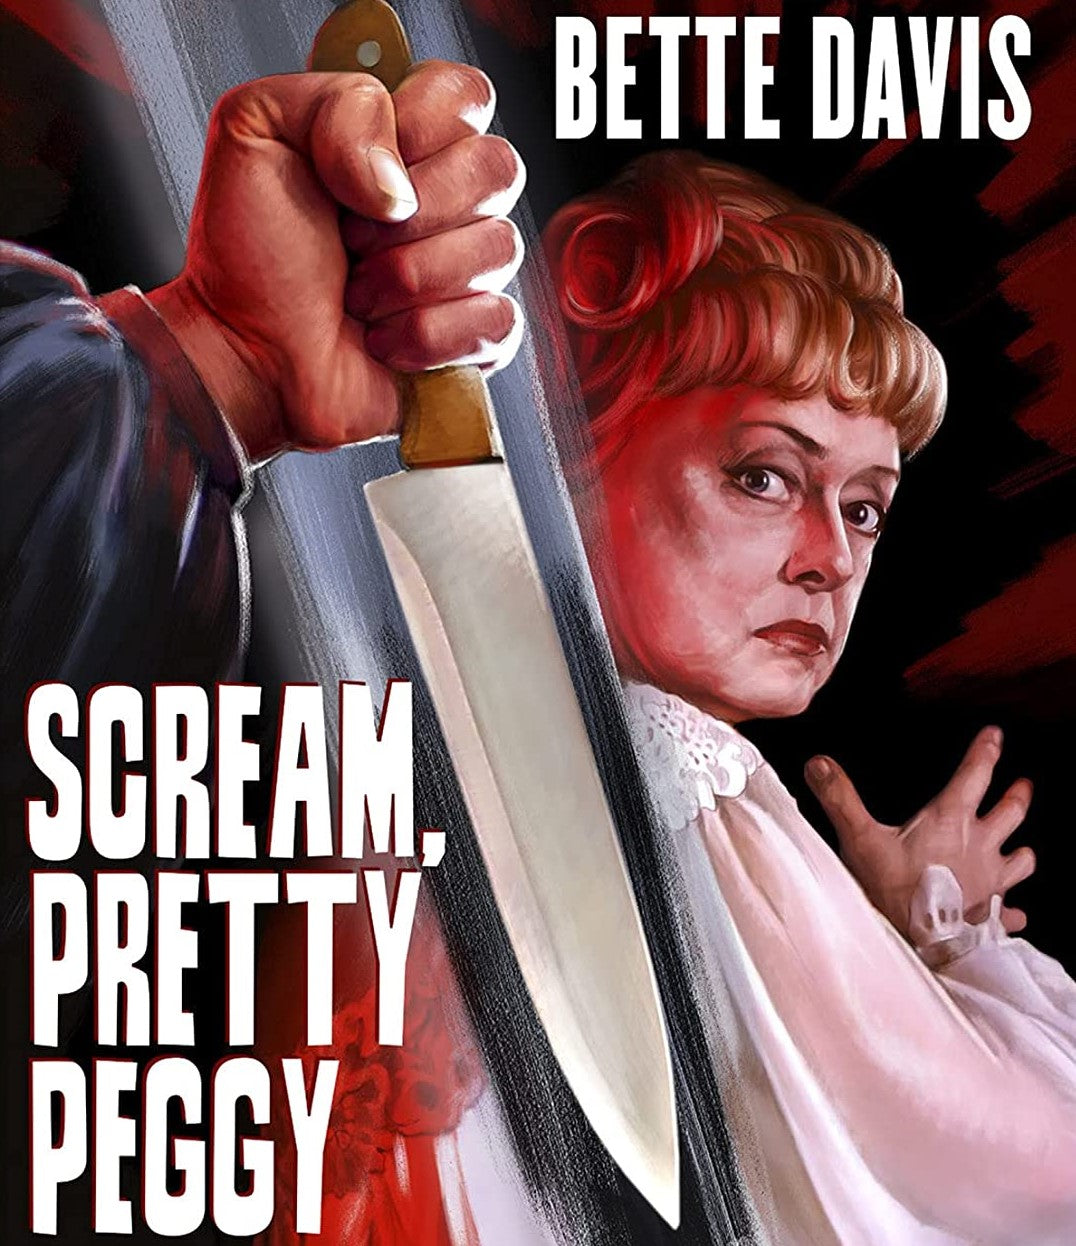 Scream Pretty Peggy Blu-Ray Blu-Ray